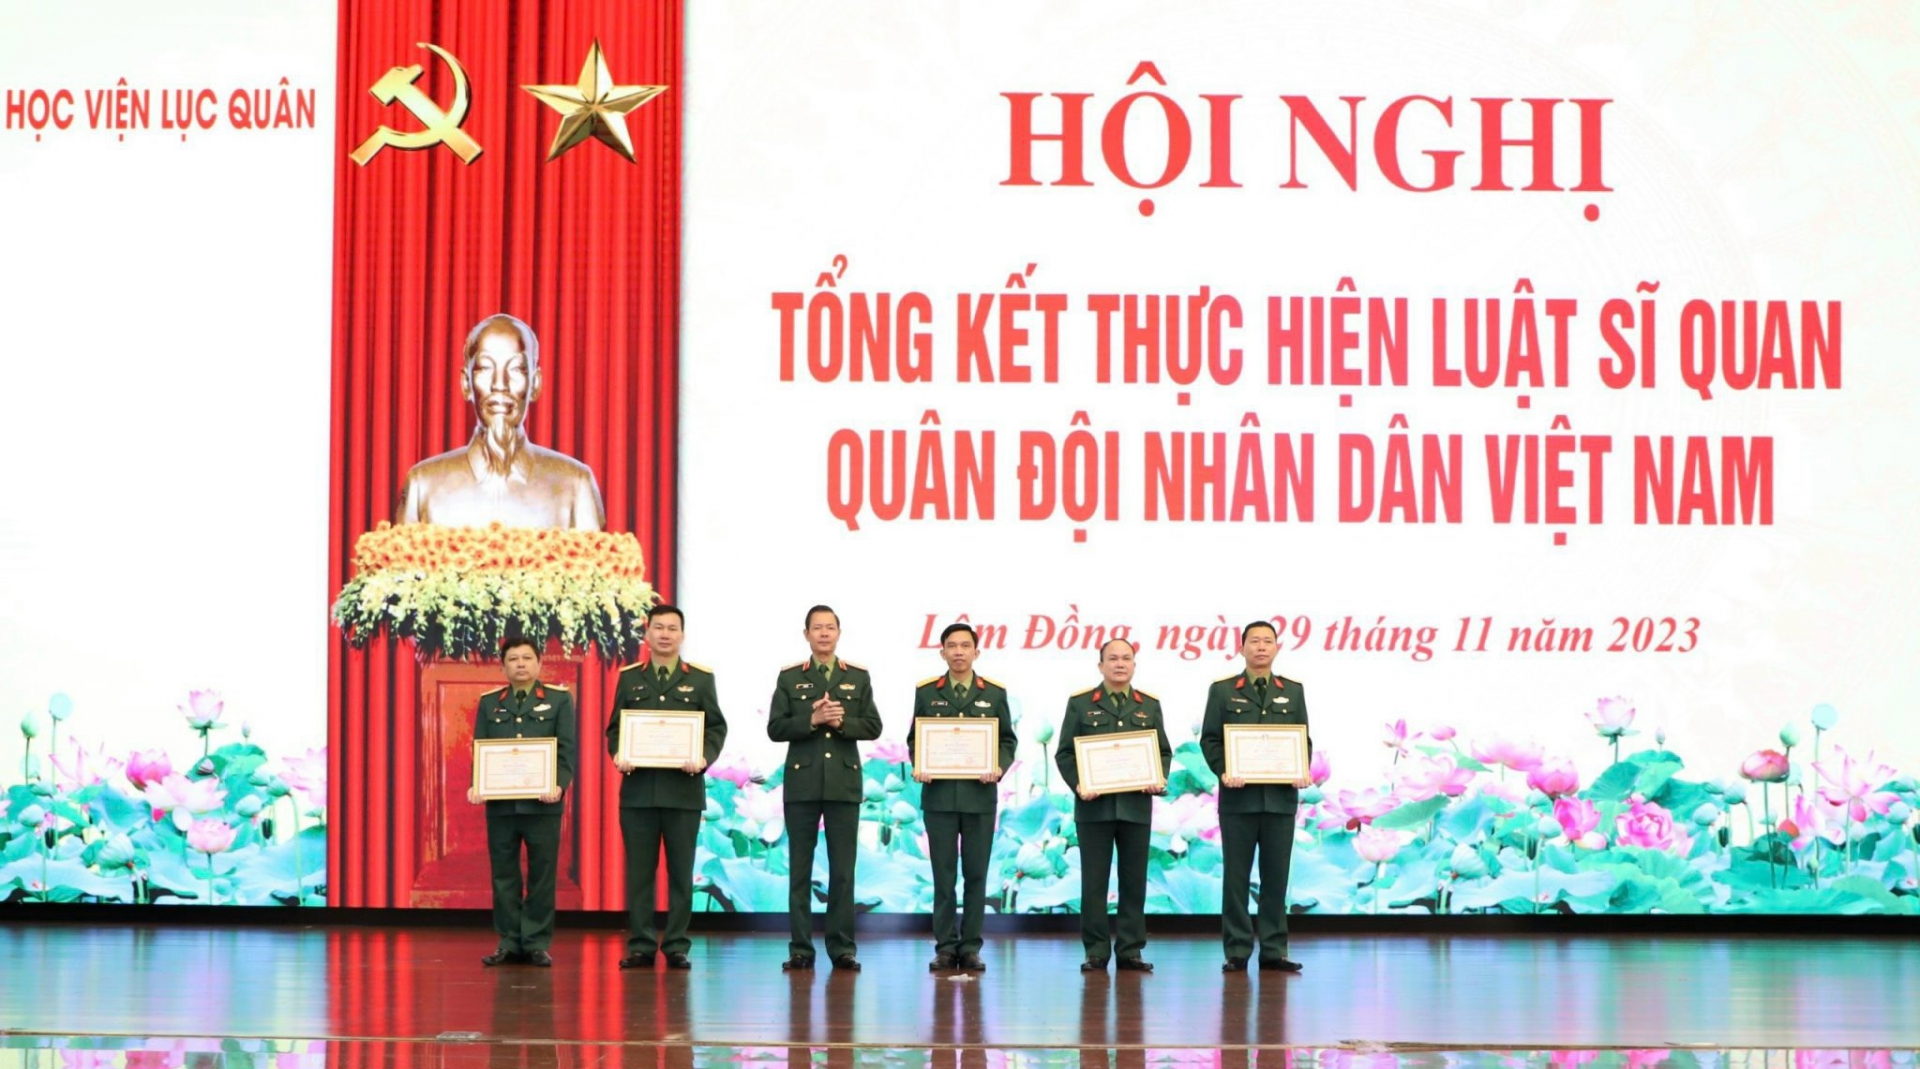 Khen thưởng các tập thể, cá nhân thực hiện tốt Luật Sĩ quan Quân đội Nhân dân Việt Nam